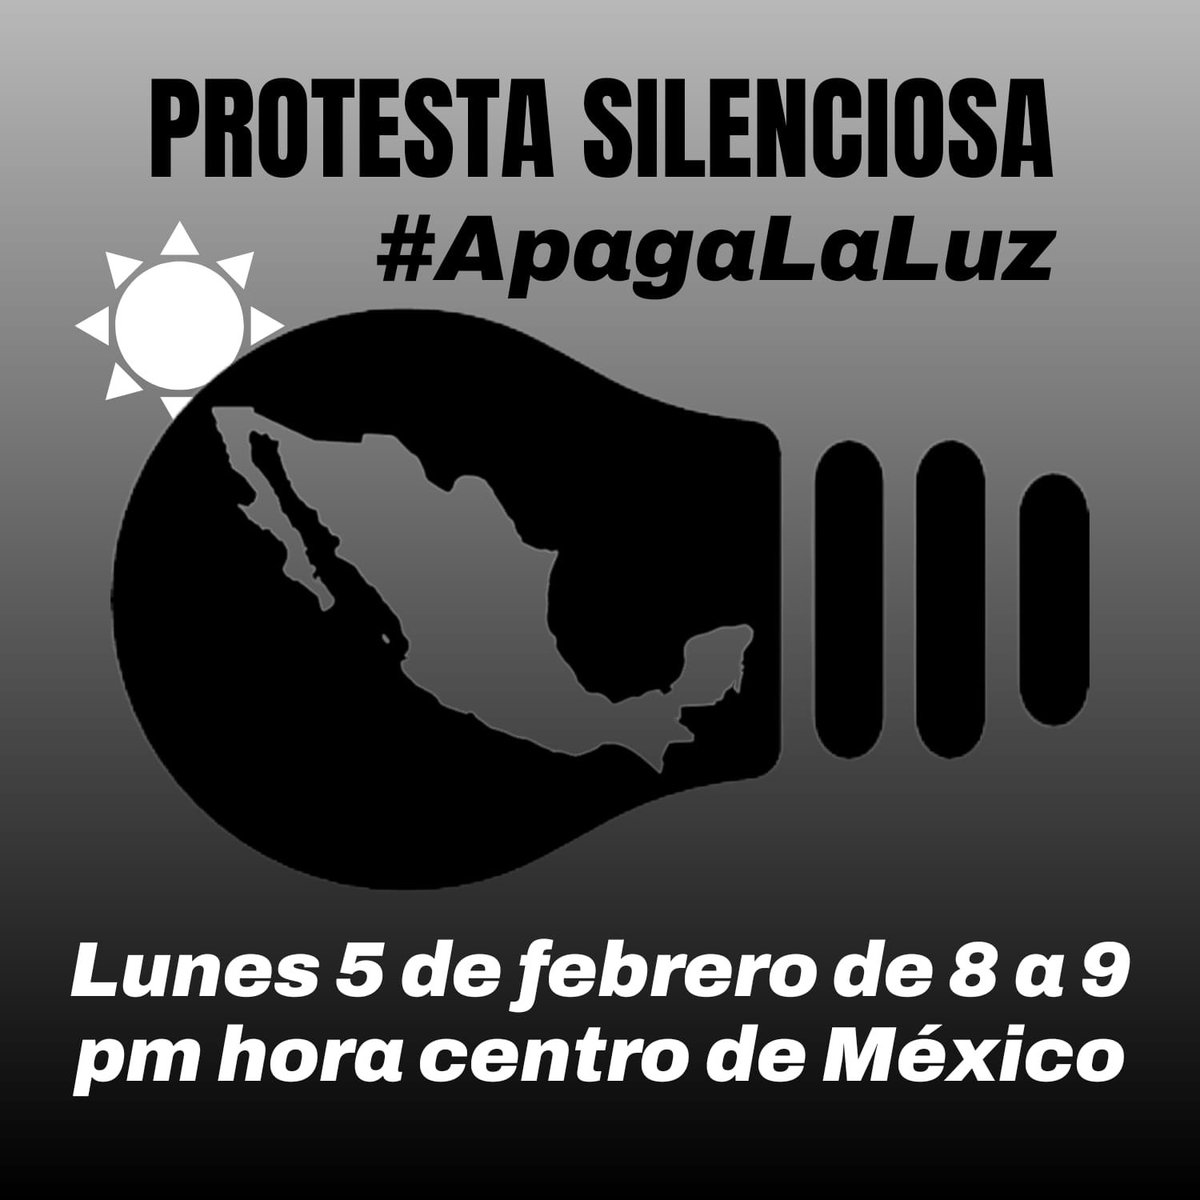 Recuerda que hoy #DiadelaConstitución se deben apagar las luces de 8 a 9 pm. #ApagaLaLuz 

Vamos a protestar de forma silenciosa en defensa de nuestra constitución y demostrarle a ese #NarcoPresidenteAMLO que nos valen sus pendejadas!

México se encuentra de luto. 
APAGA LA LUZ!!